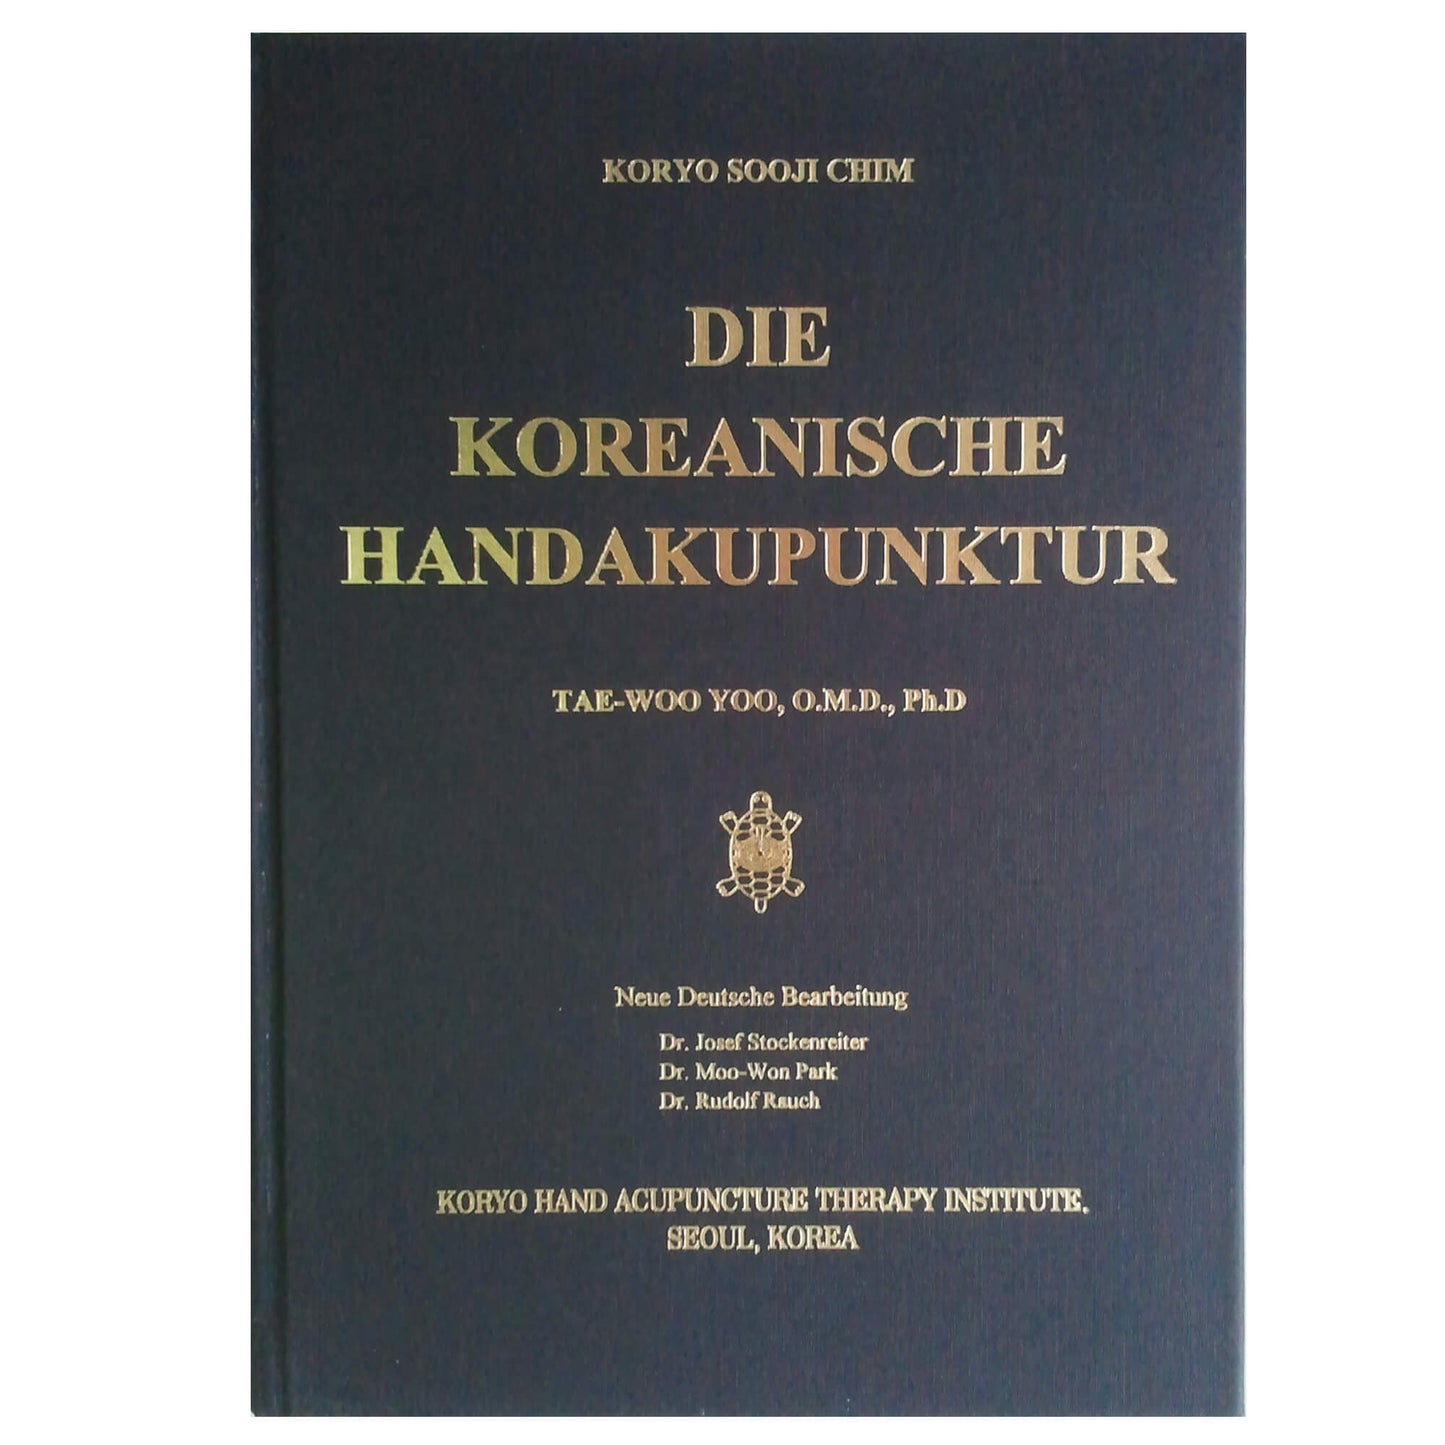 Libro "Die Koreanische Handakupunktur"